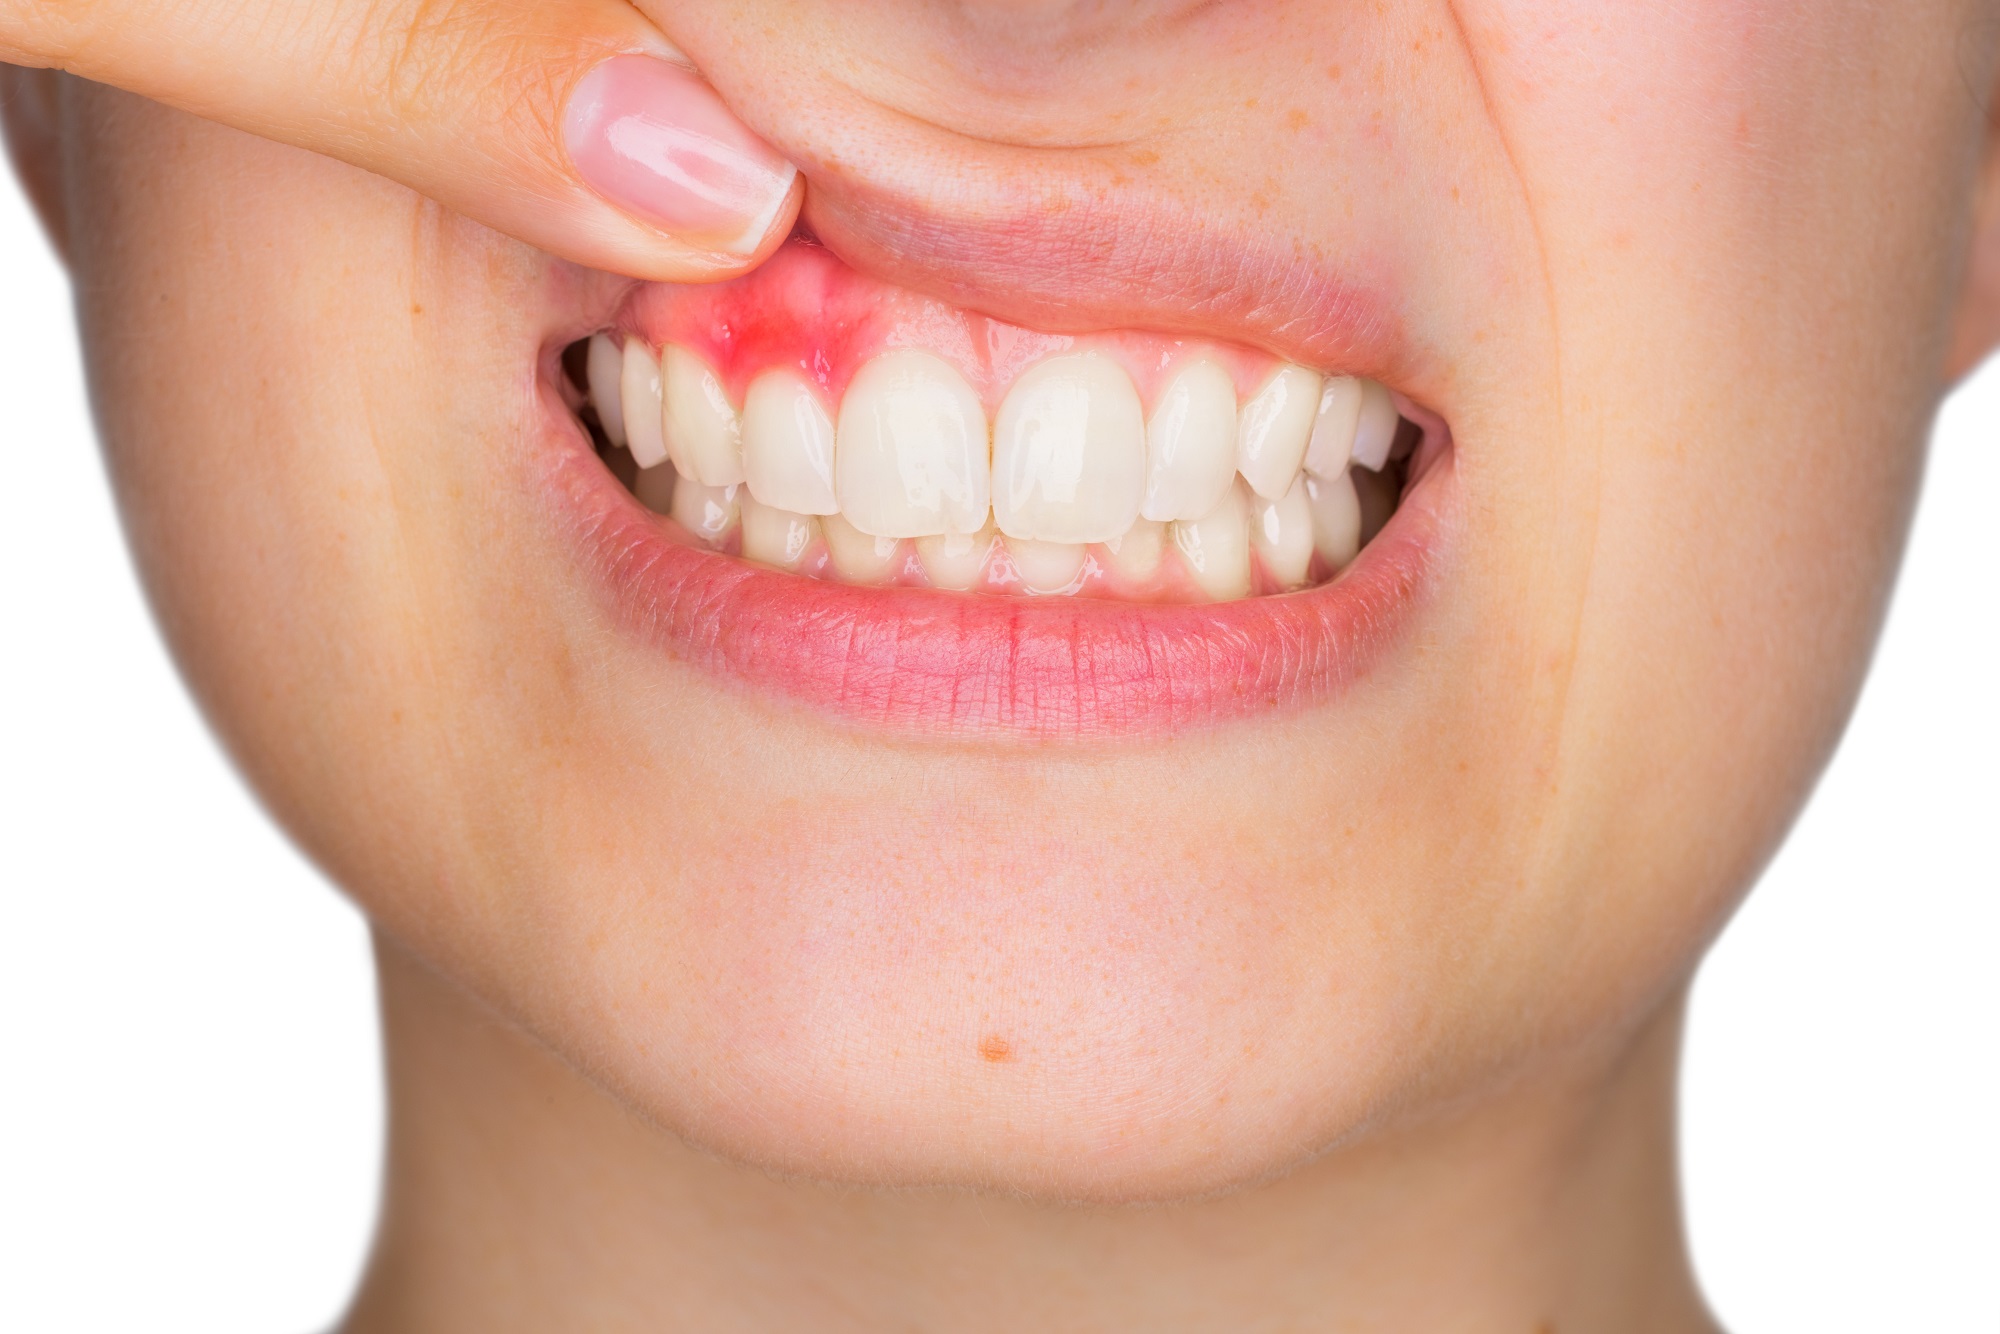 Tooth Gum Disease